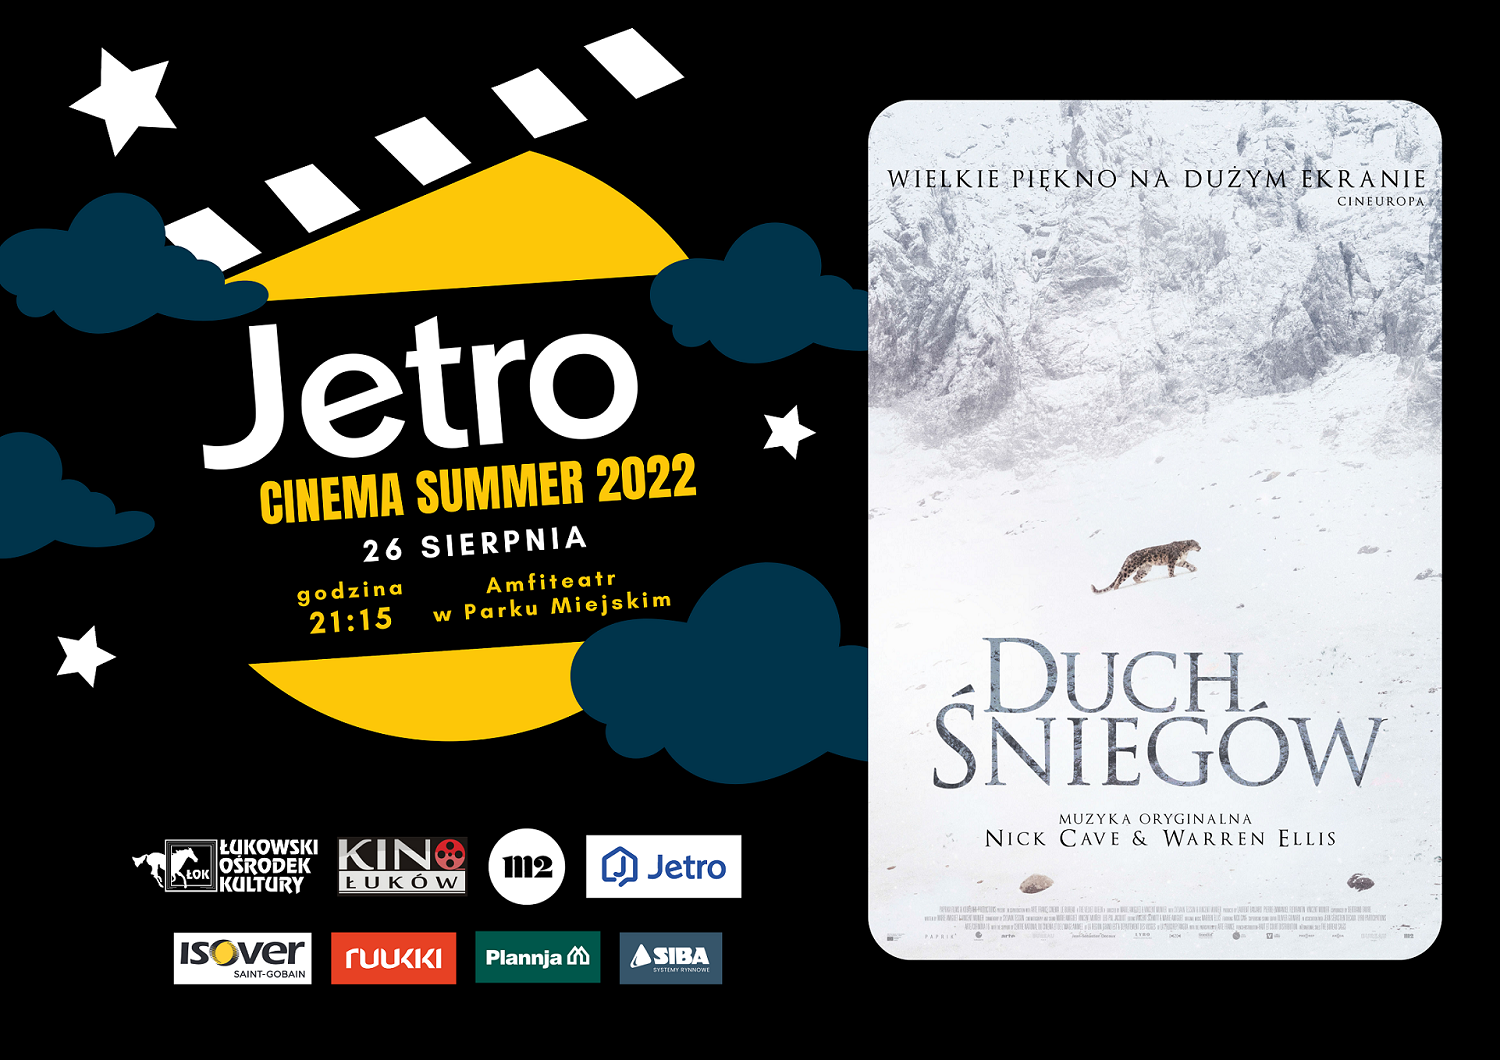 Jetro Cinema Summer 2022: „Duch śniegów”